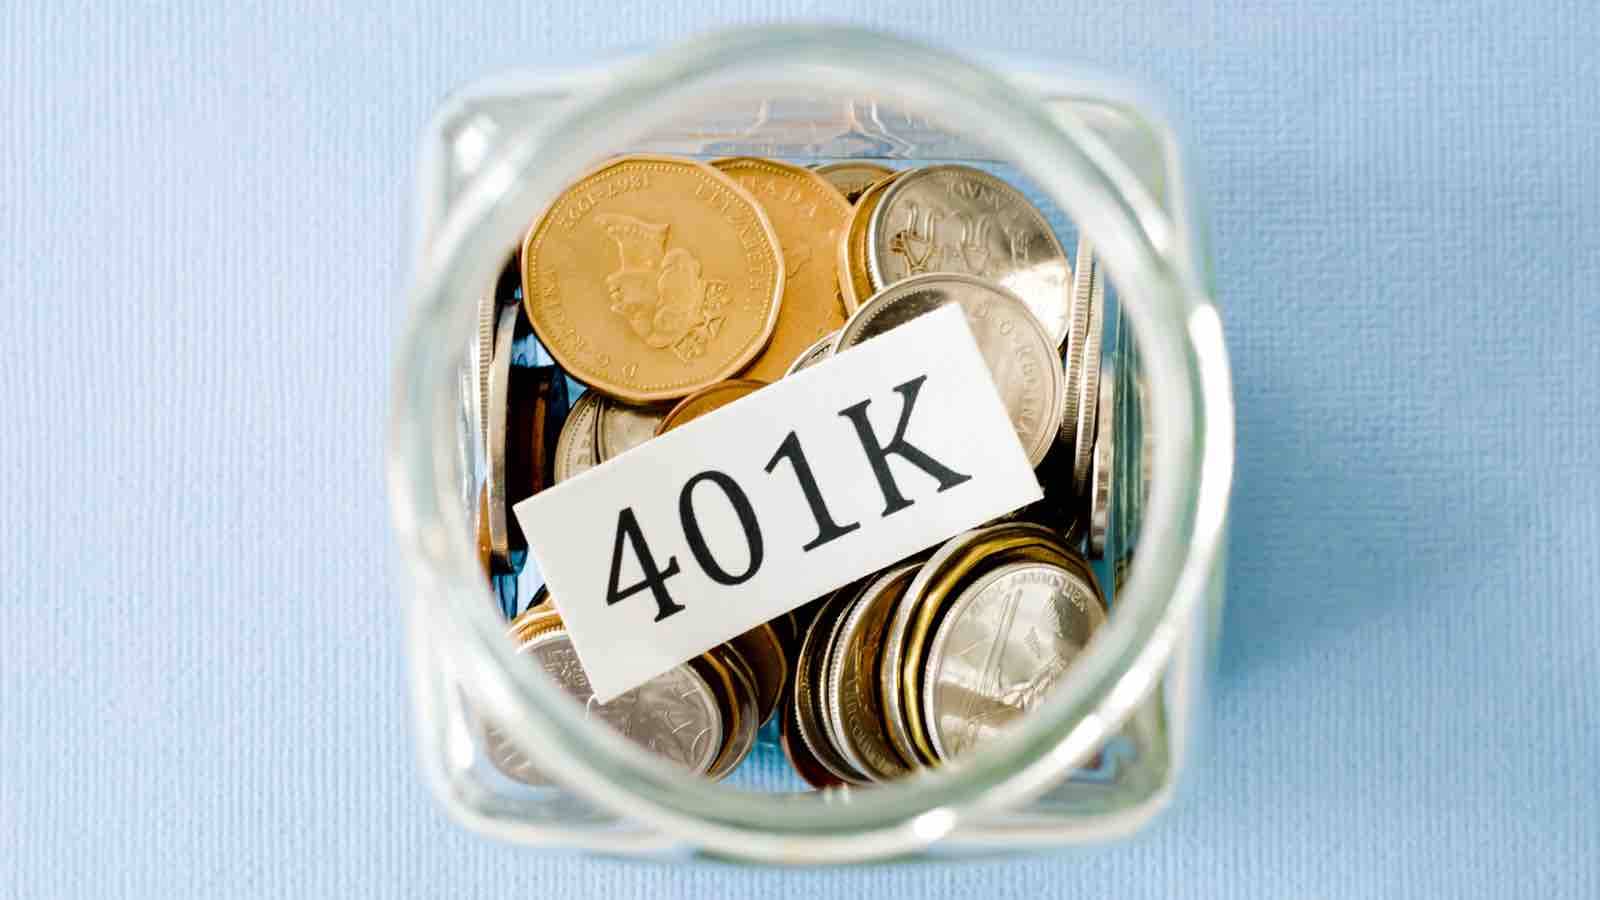 401k-Savings-Money-Jar.jpg